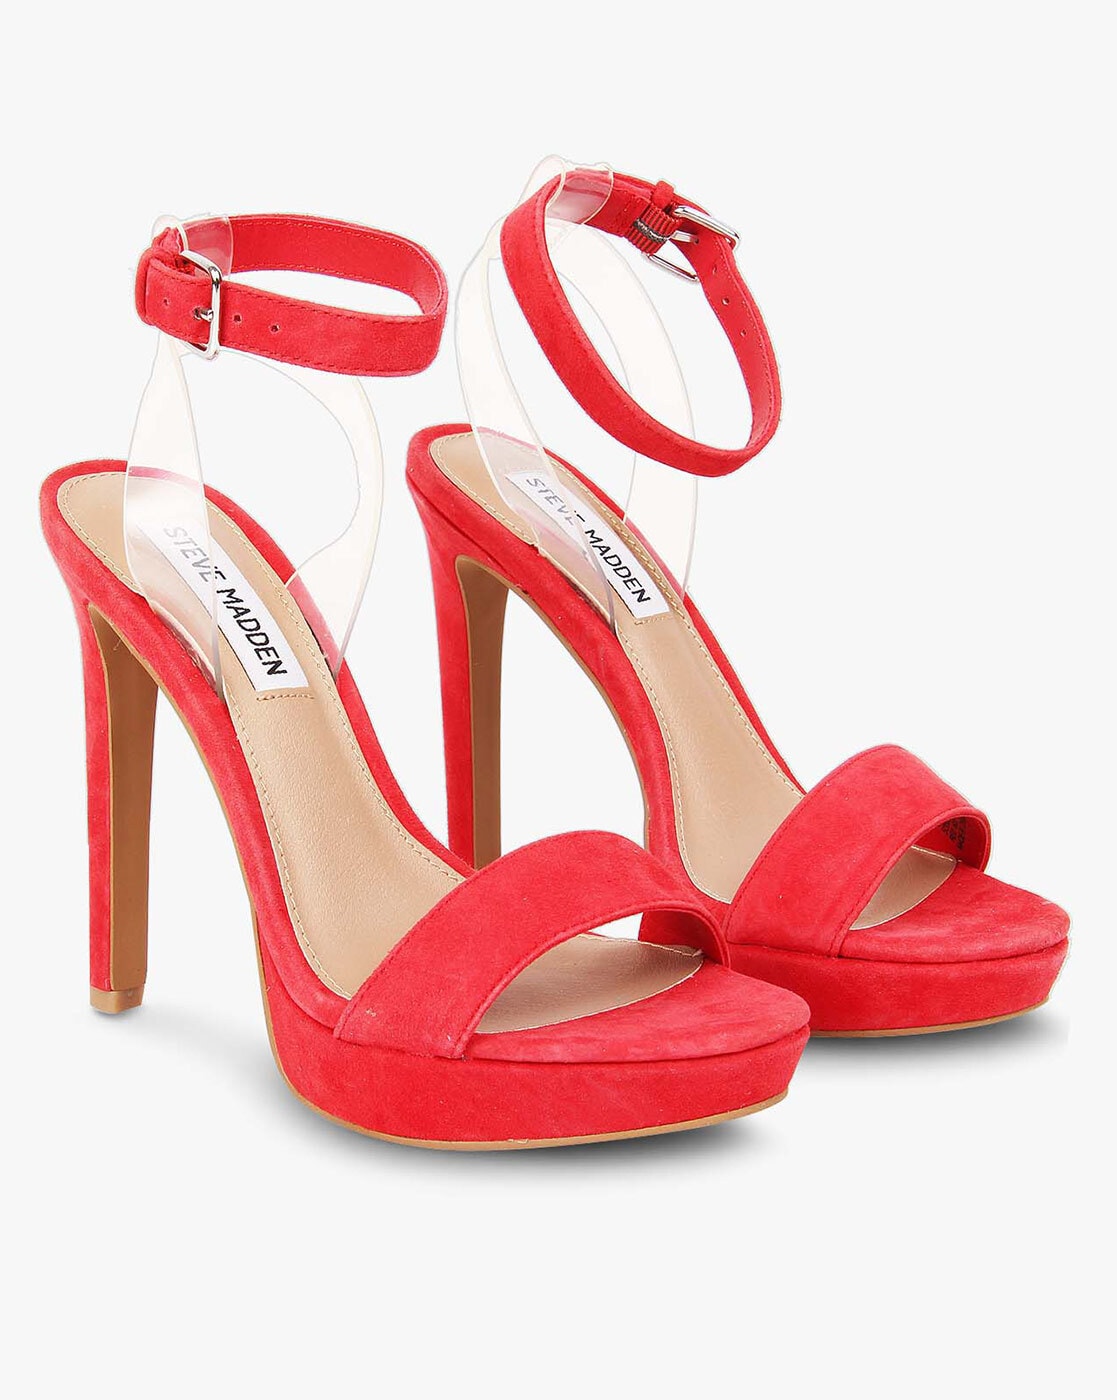 steve madden red sandals